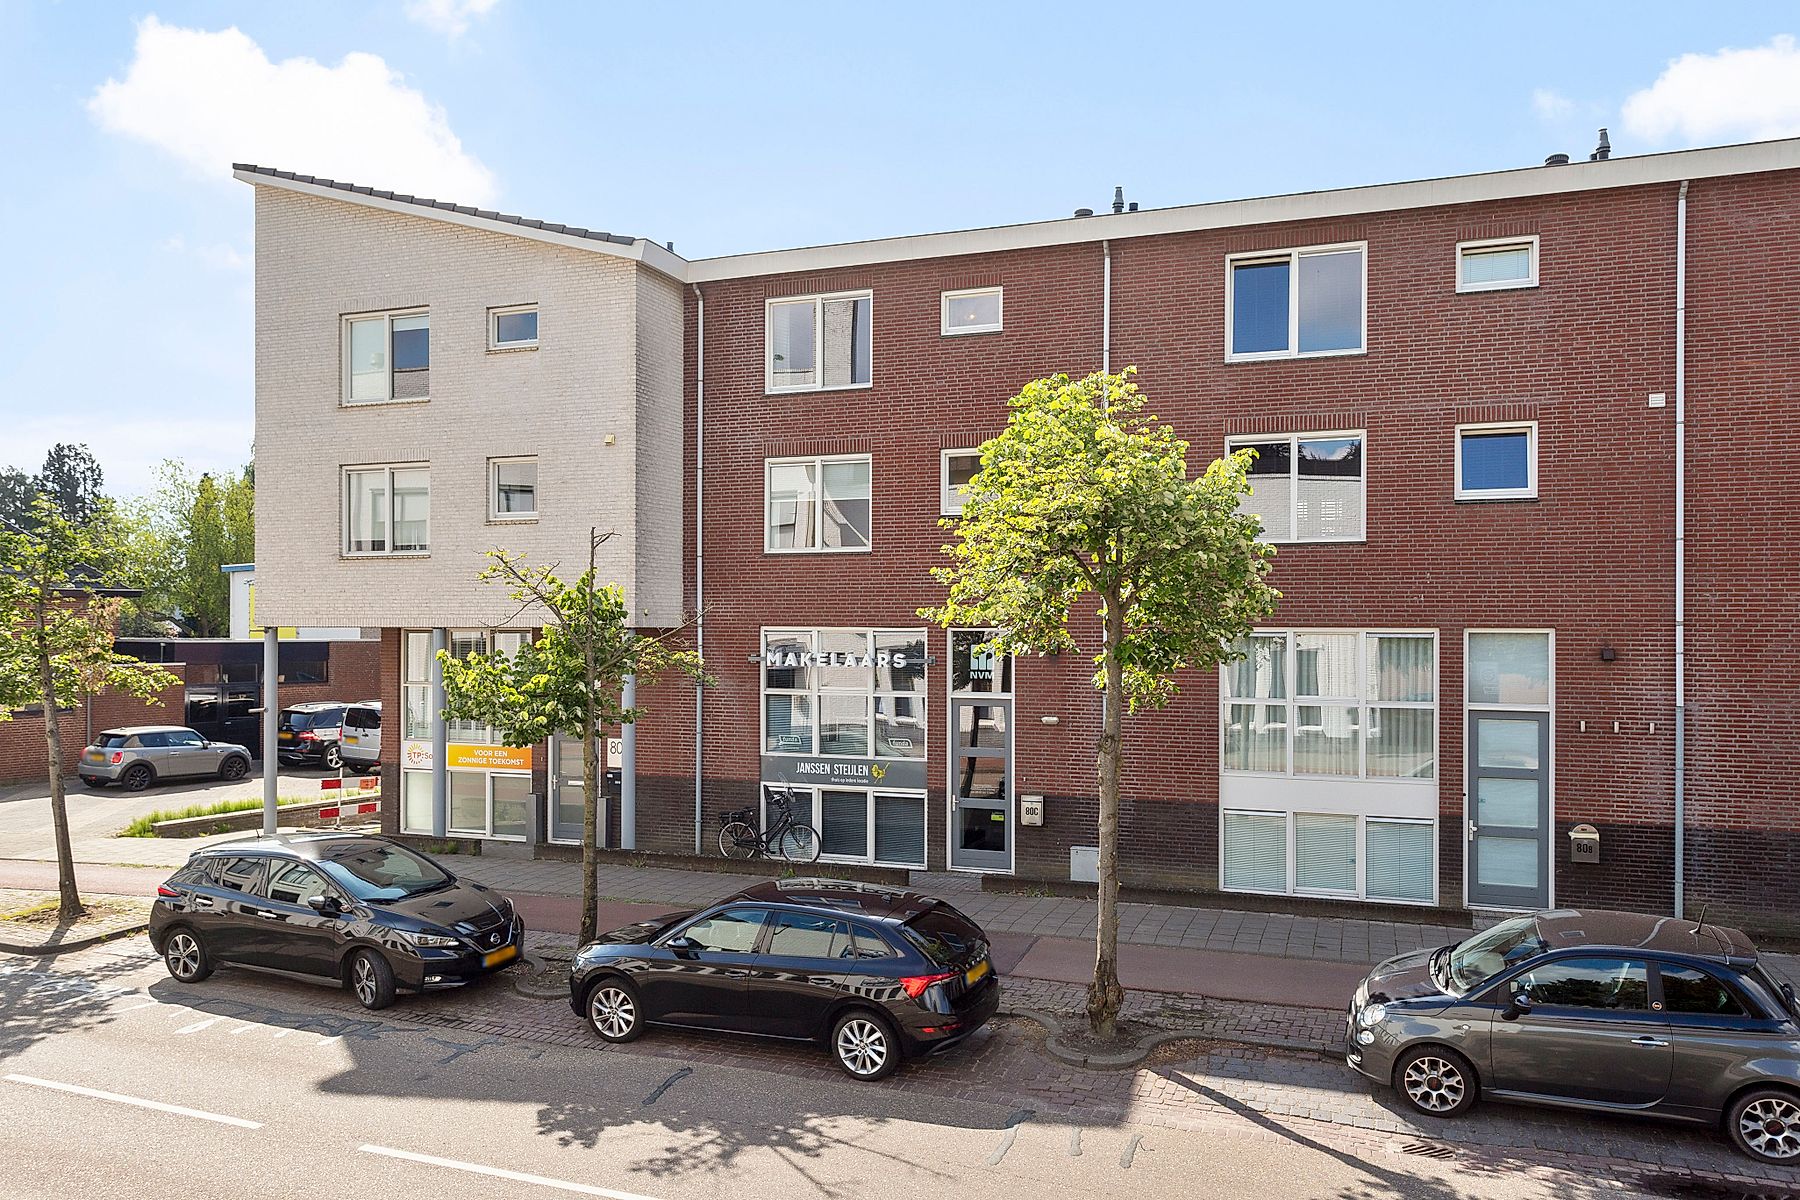 Bekijk foto 1/38 van apartment in Veldhoven